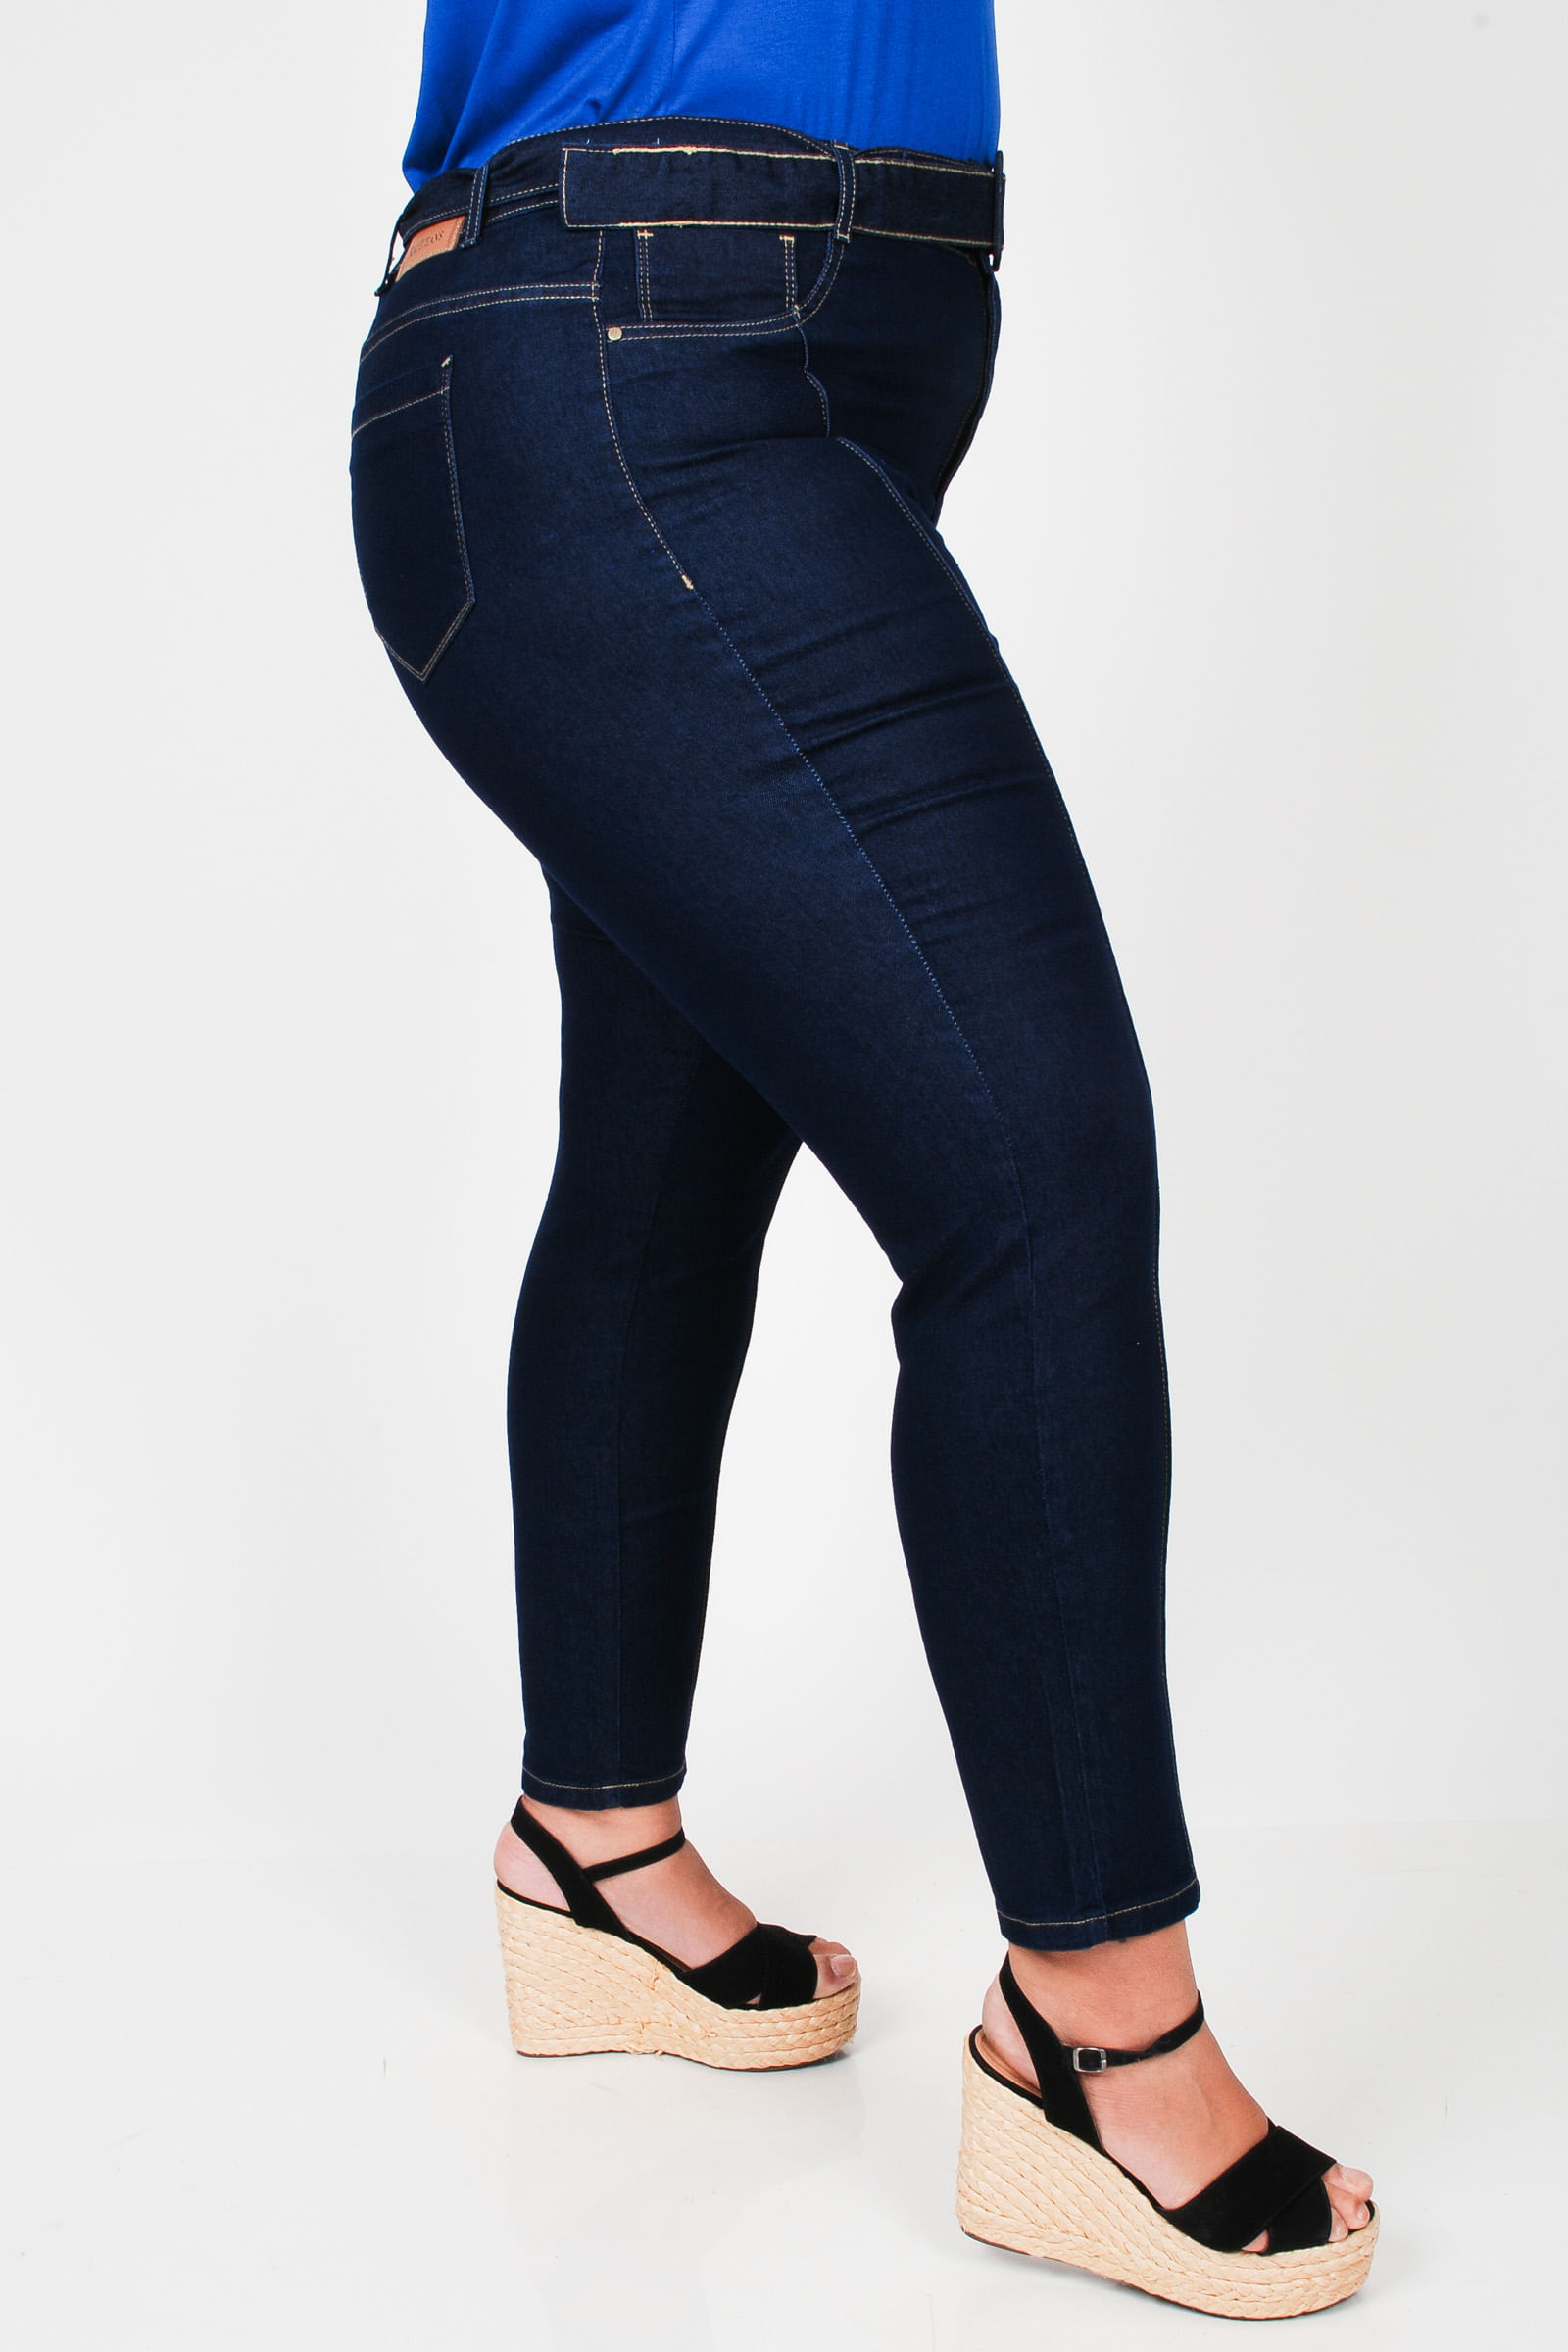 Calca-skinny-jeans-com-cinto-plus-size_0102_3